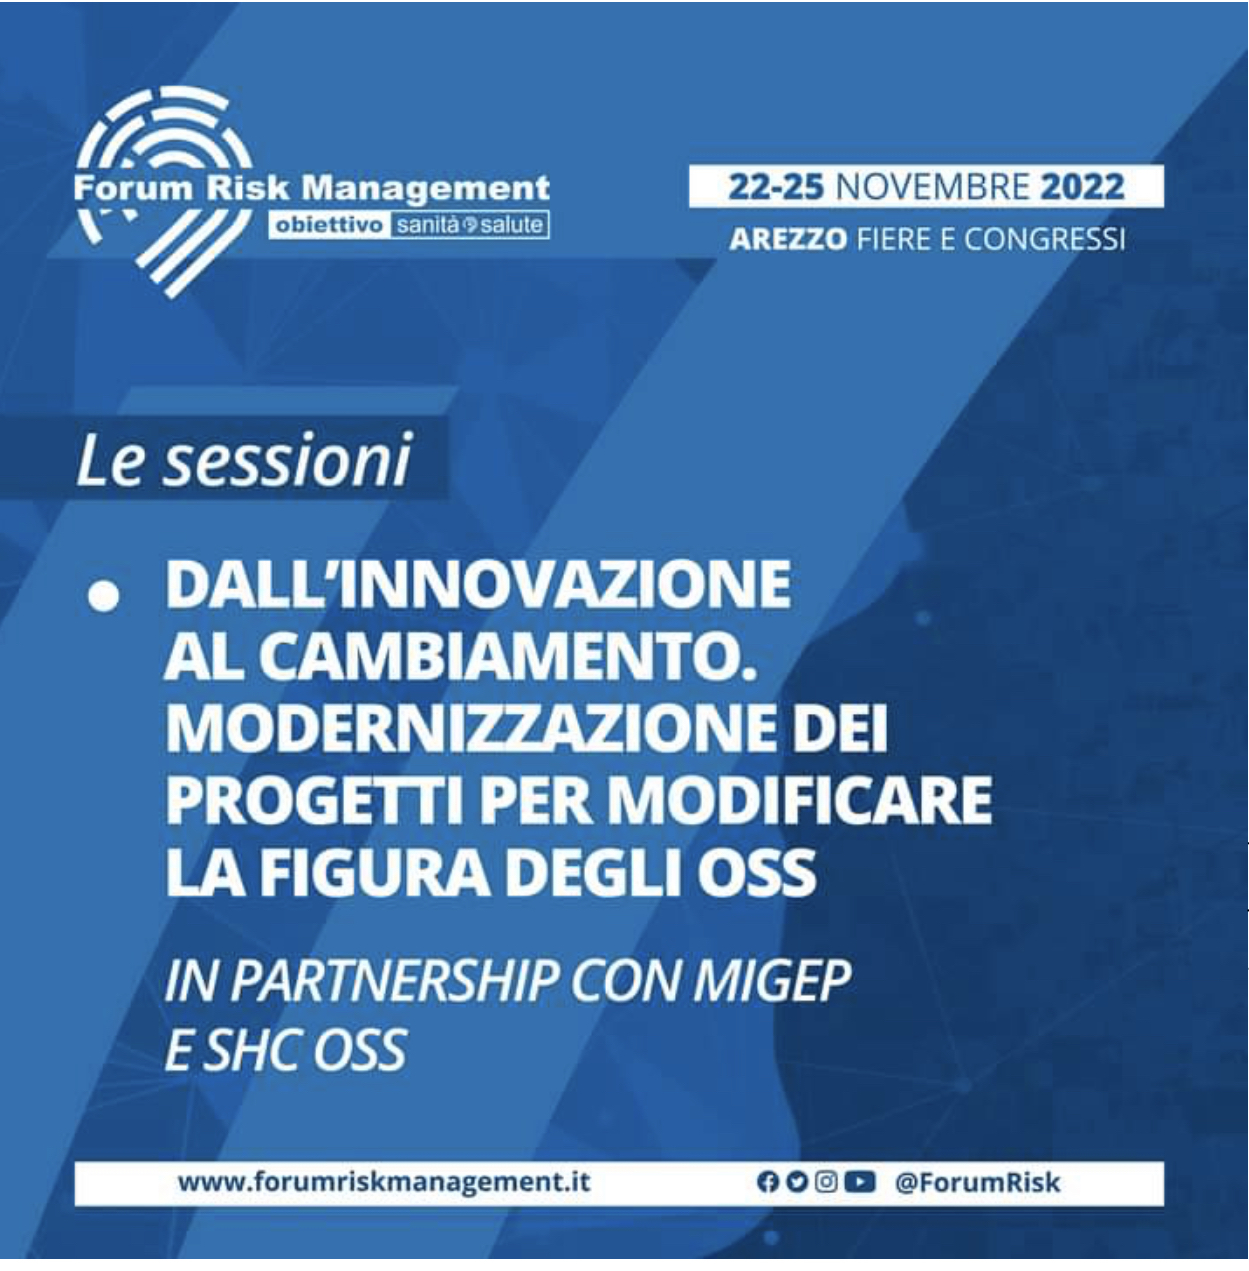 Il Migep al Forum Risk di Arezzo per innovare e modernizzare la figura degli oss